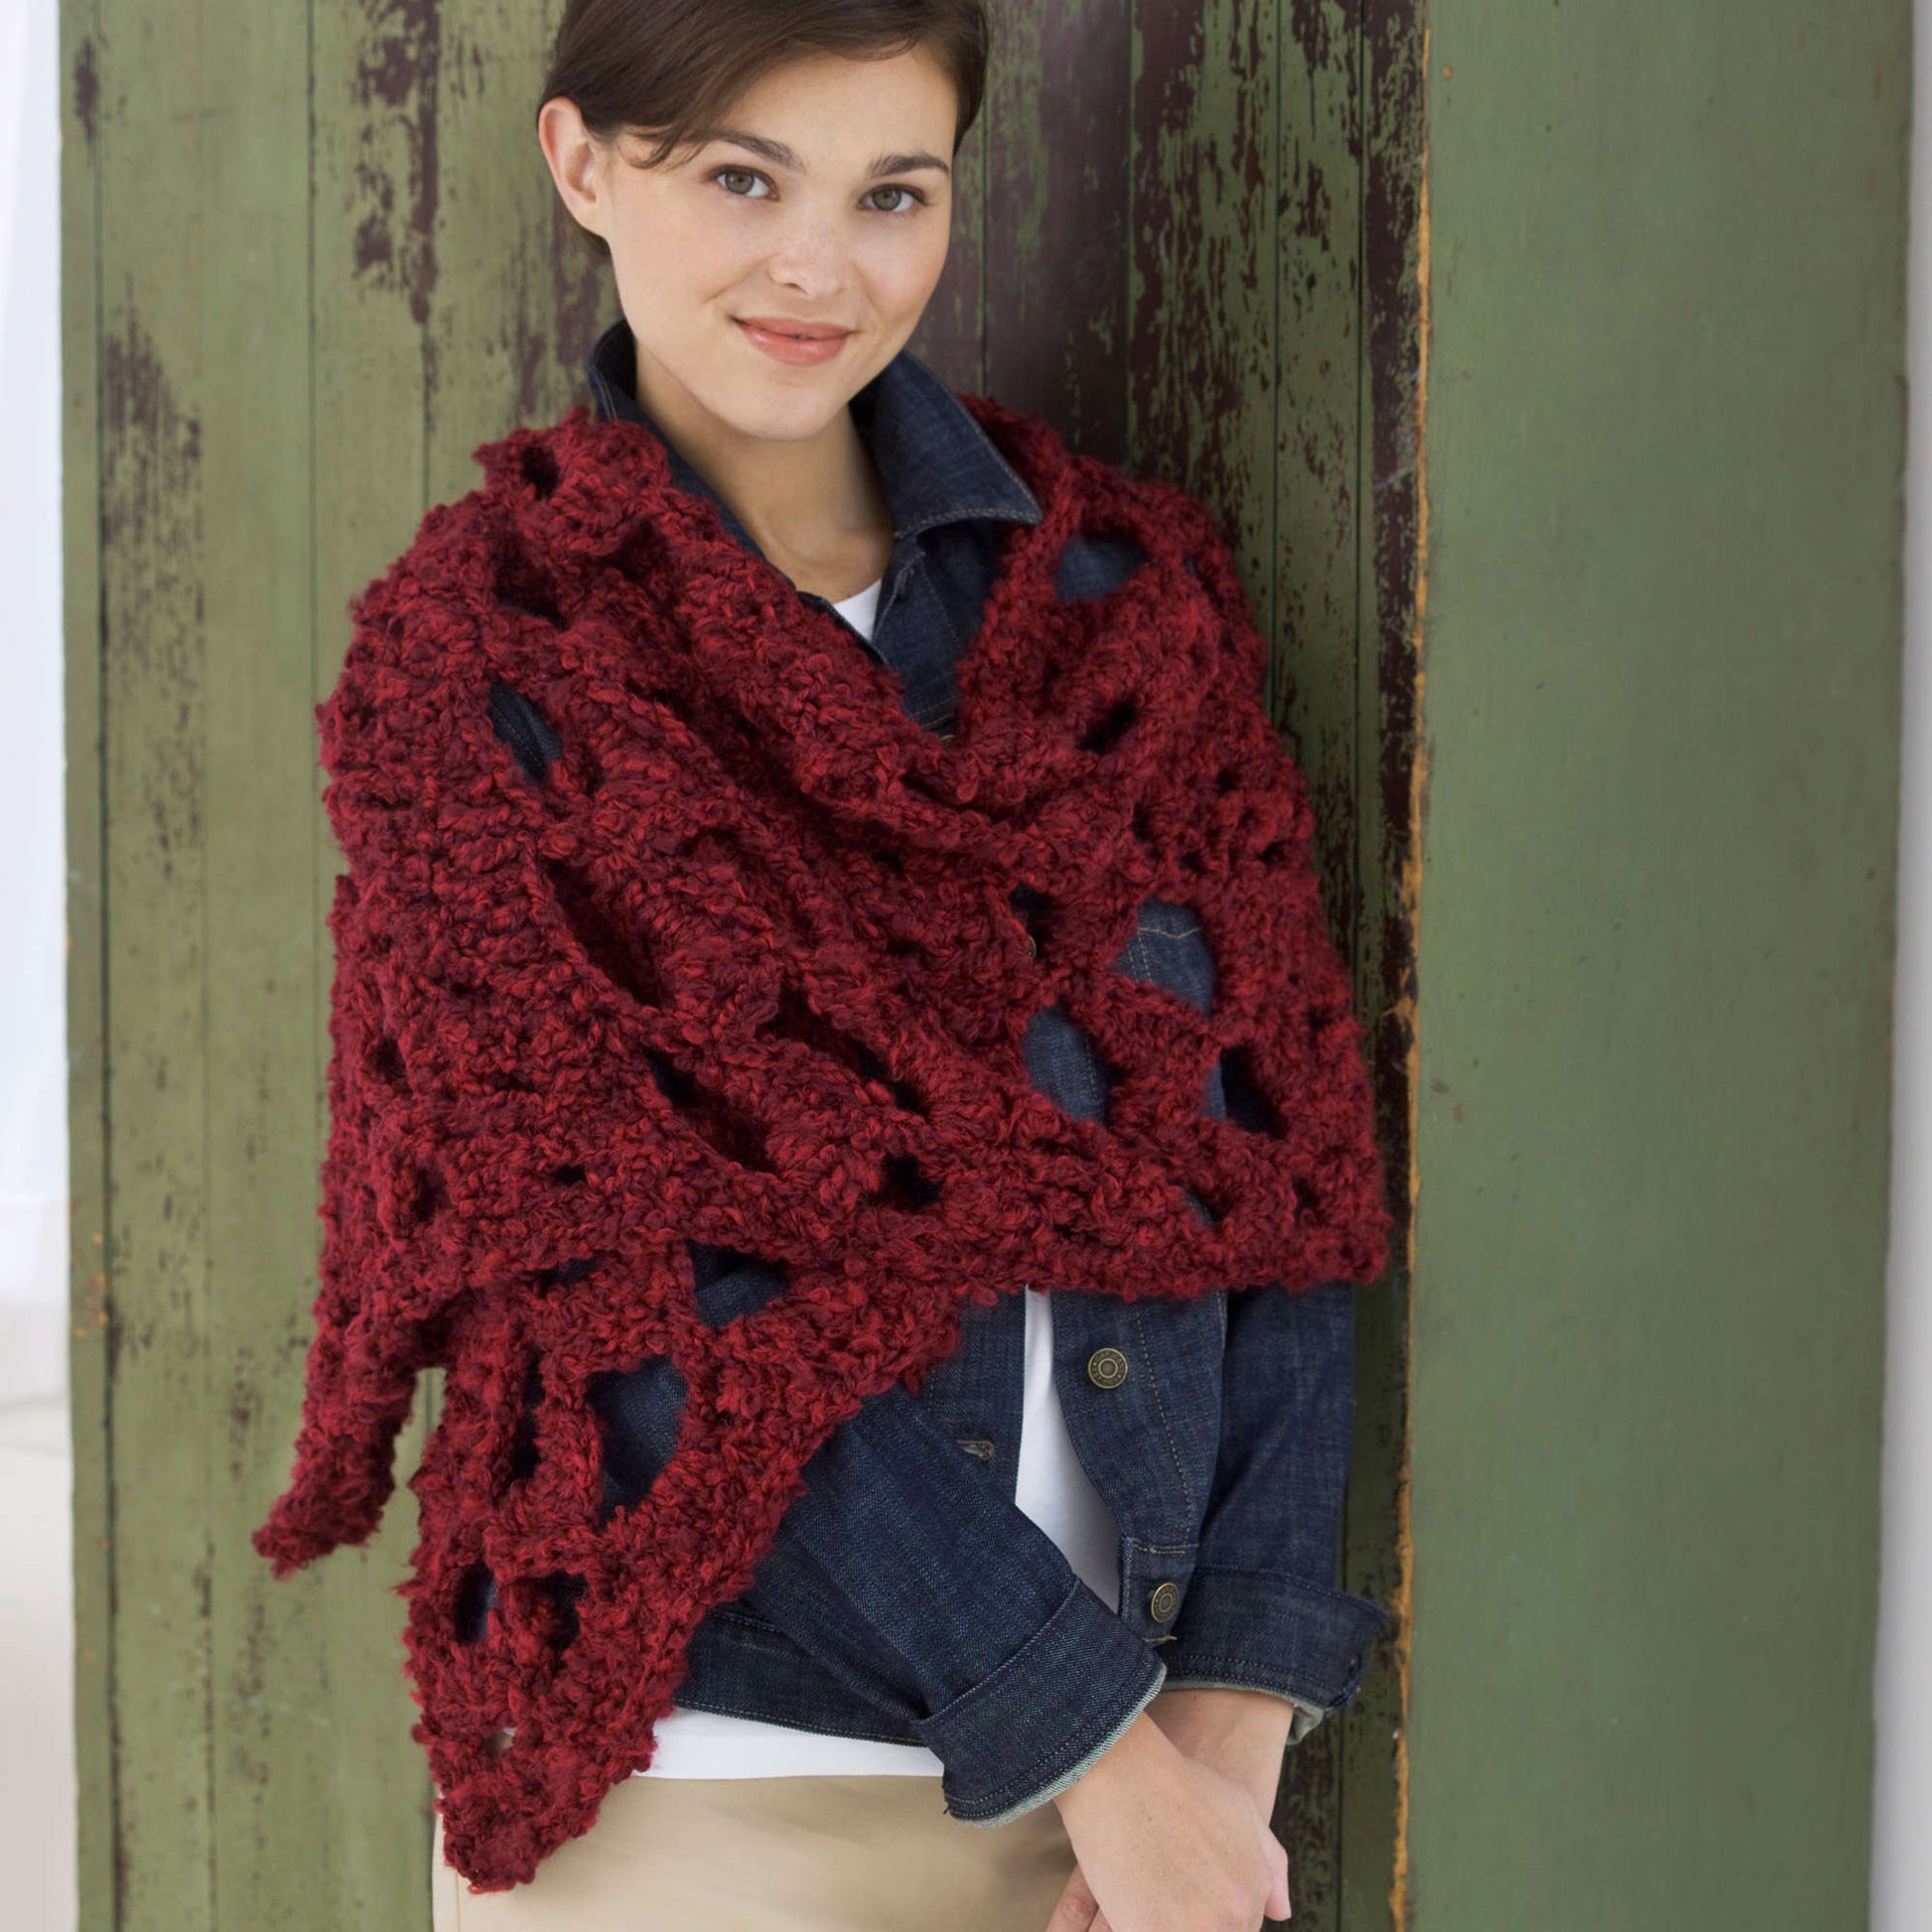 Free Red Heart Crochet Lace Wrap Pattern